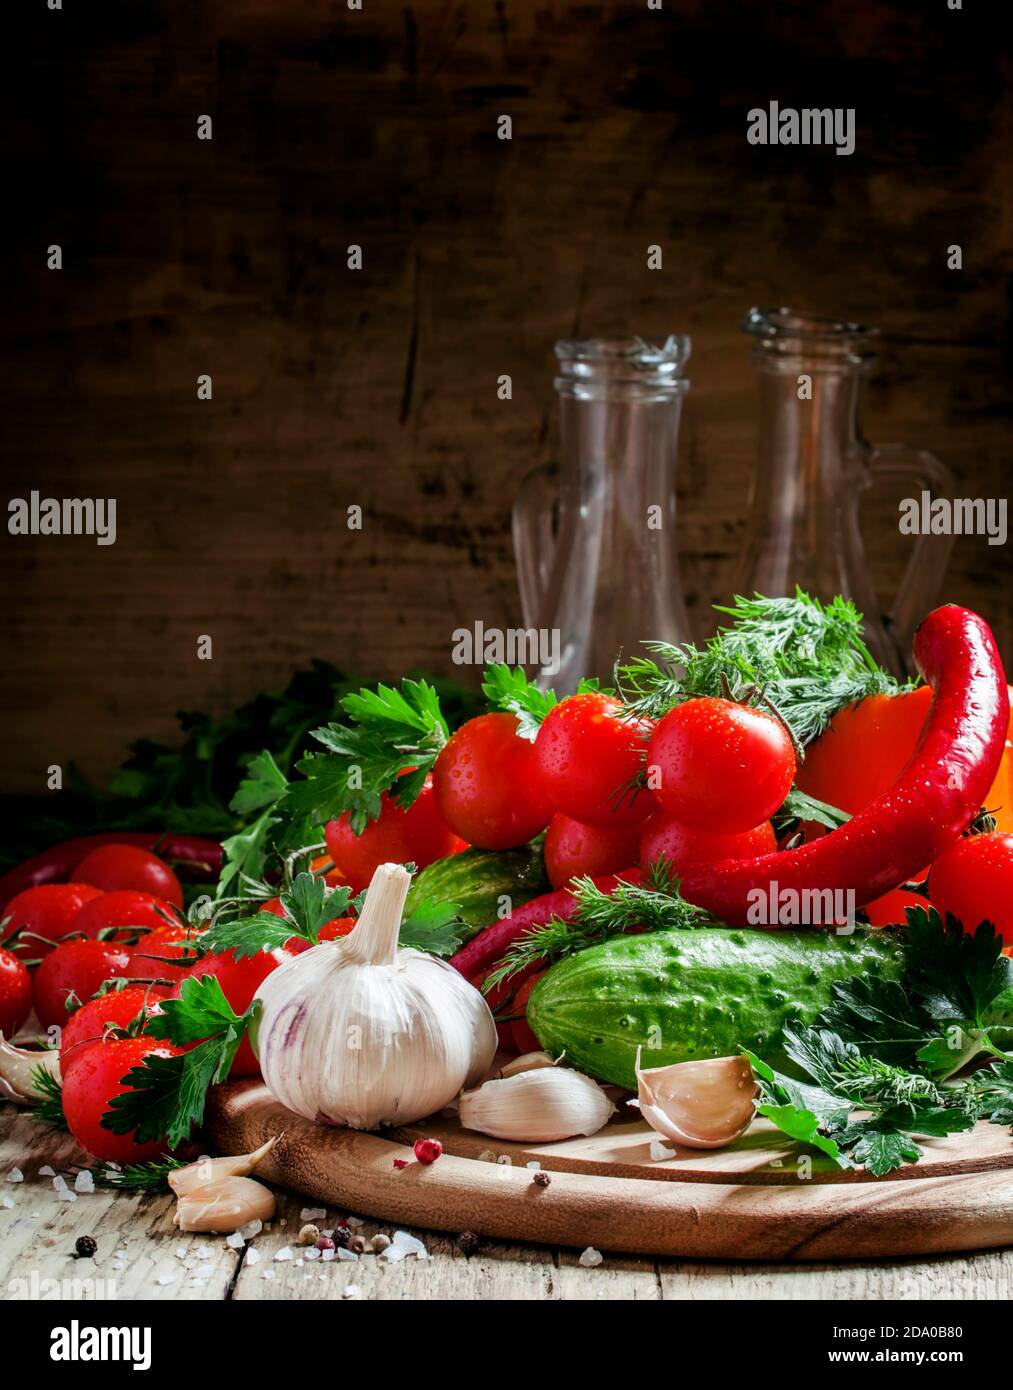 Ail frais, tomates cerises, concombre, poivre chaud, persil, aneth sur une planche à découper en bois, légumes pour le régime méditerranéen, attention sélective Banque D'Images